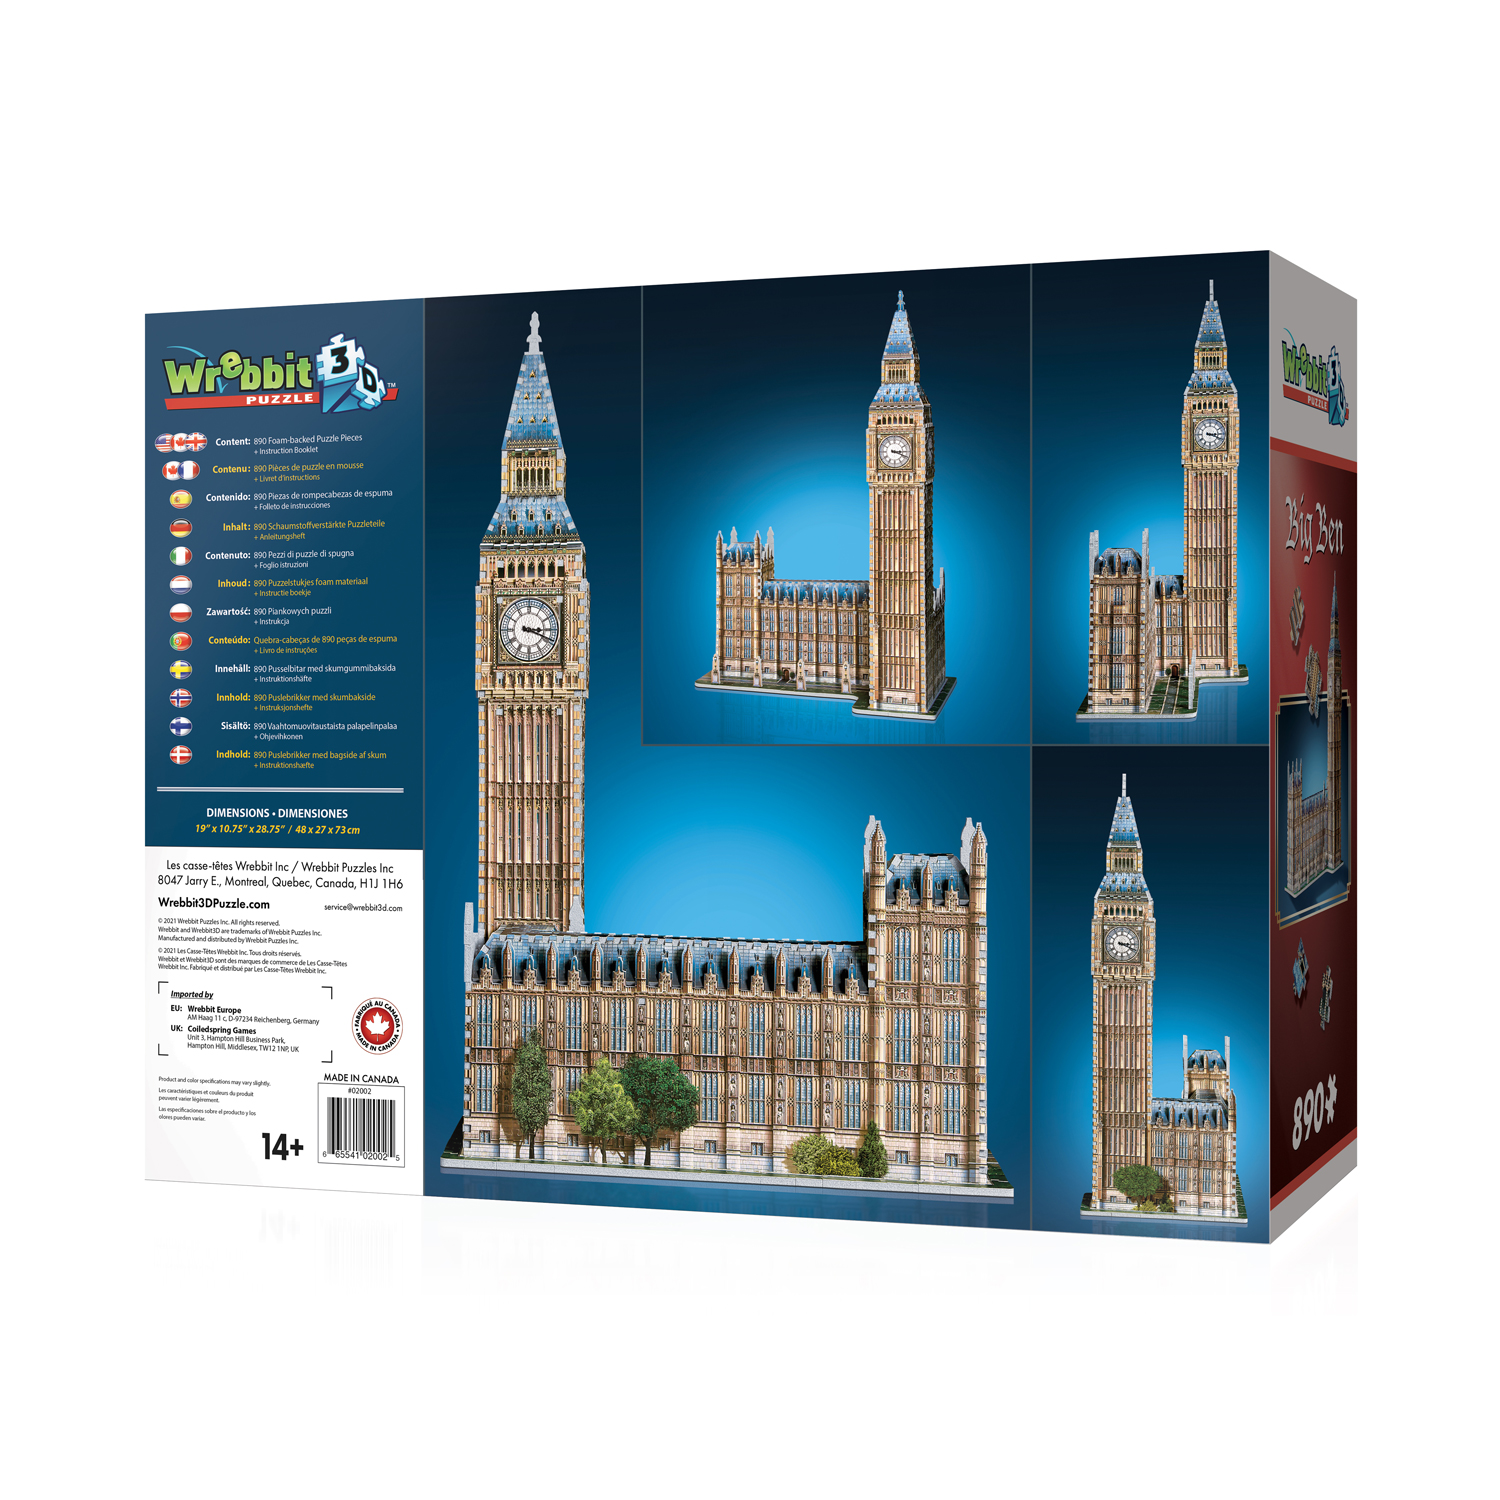 3D Famous Buildings Landmarks Architecture Replicas Models Jigsaw Puzzles Set UK